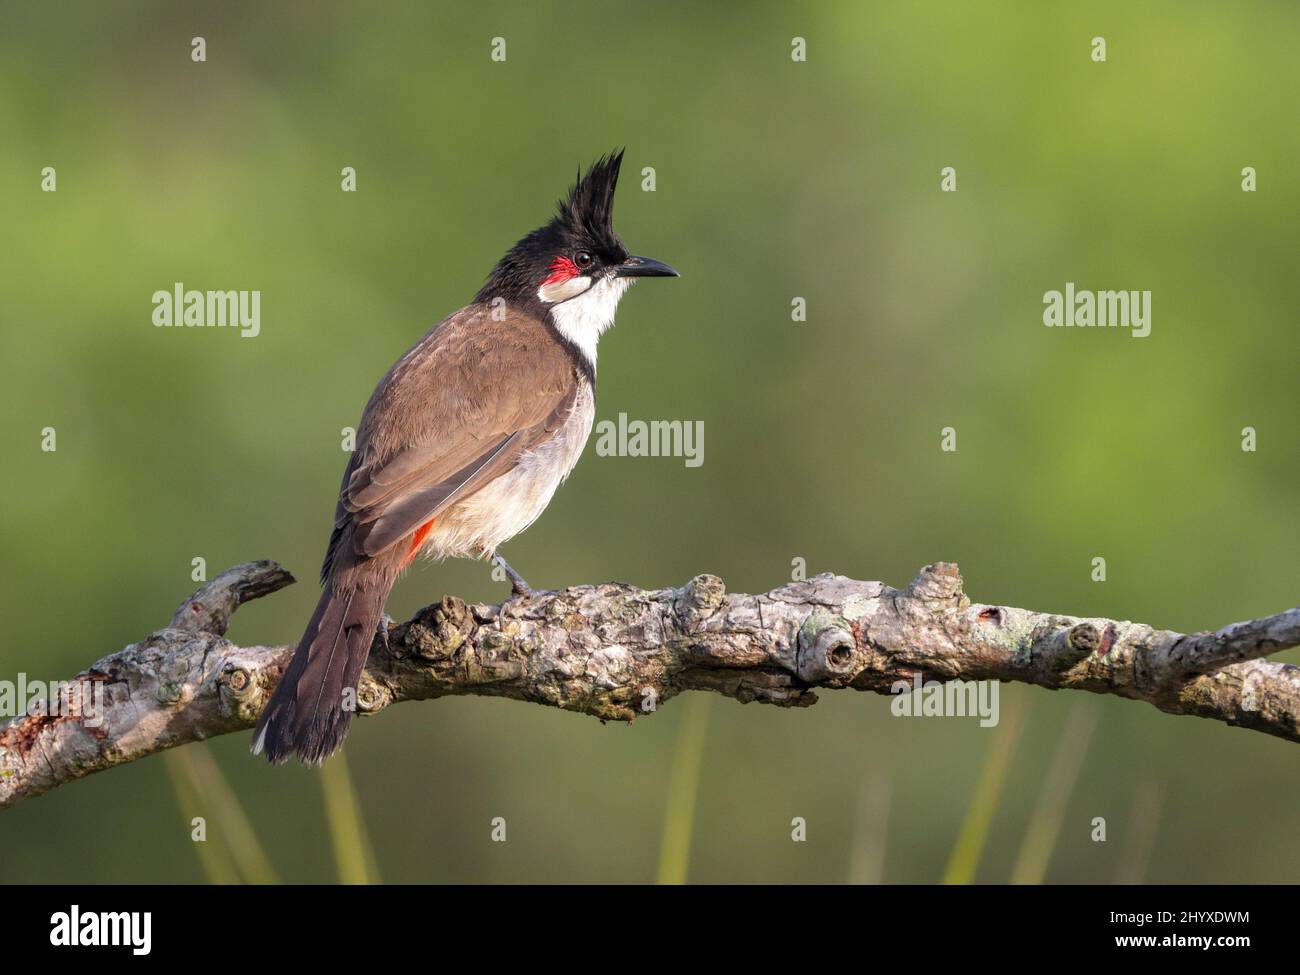 Il bulbul rosso-bisbiglio (Pycnonotus jocosus), o bulbul crestato, è un uccello passerino nativo dell'Asia. Fa parte della famiglia bulbul. Foto Stock